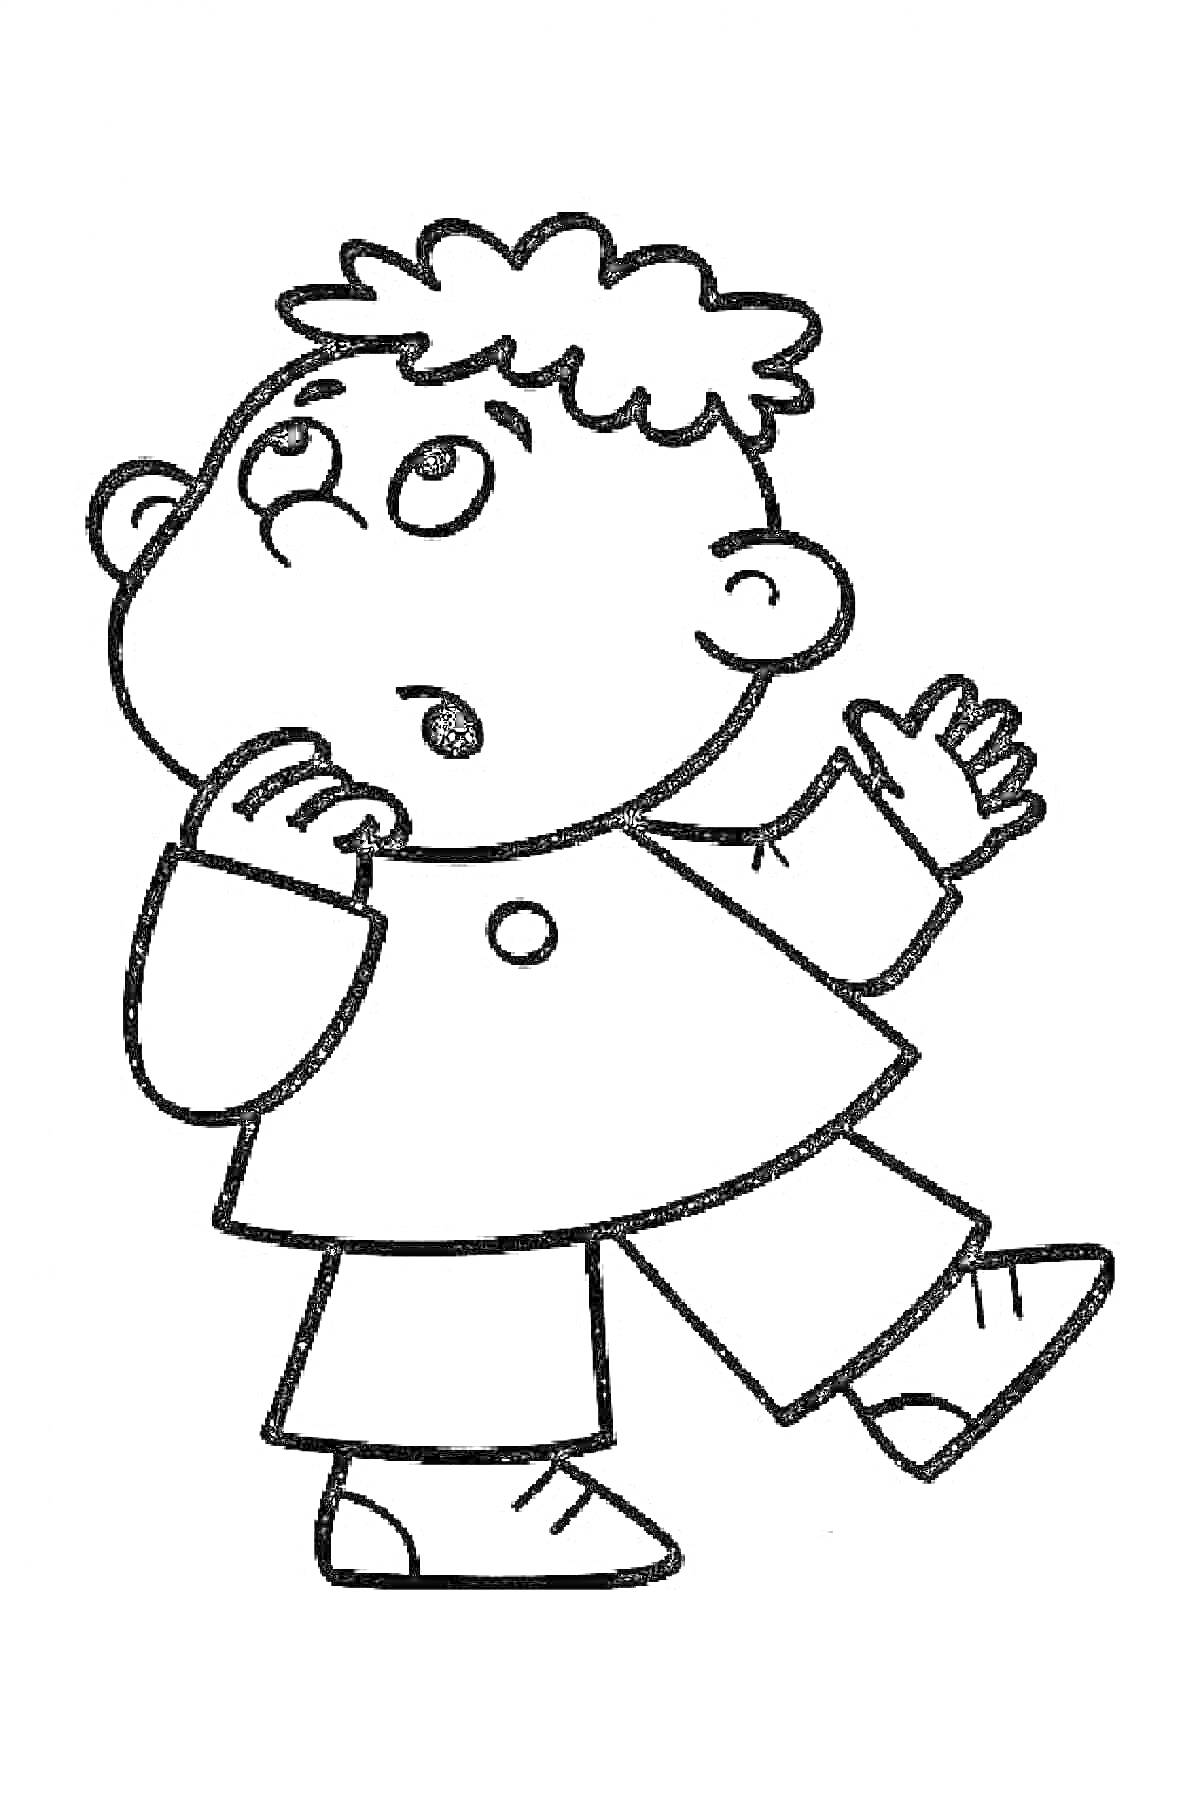 Ребёнок с вьющимися волосами в одежде, смотрящий вверх и прикладывающий руку ко рту